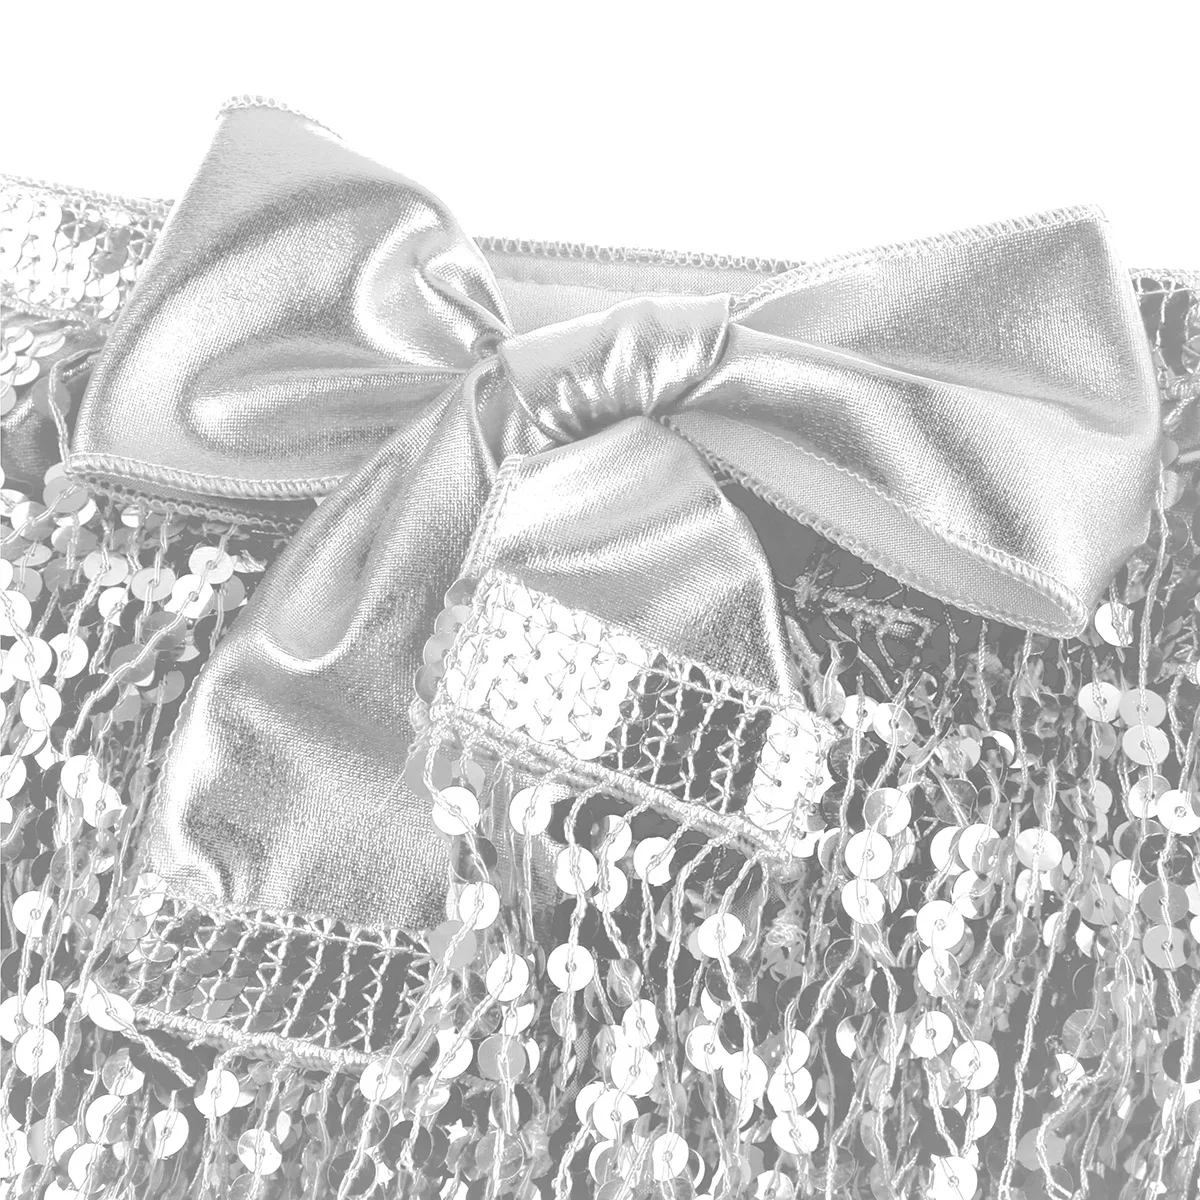 TiaoBug женский сексуальный костюм для танца живота с блестками и кисточками голографическая танцевальная юбка Женский фестивальный рейв хип-шарф Одежда для выступлений